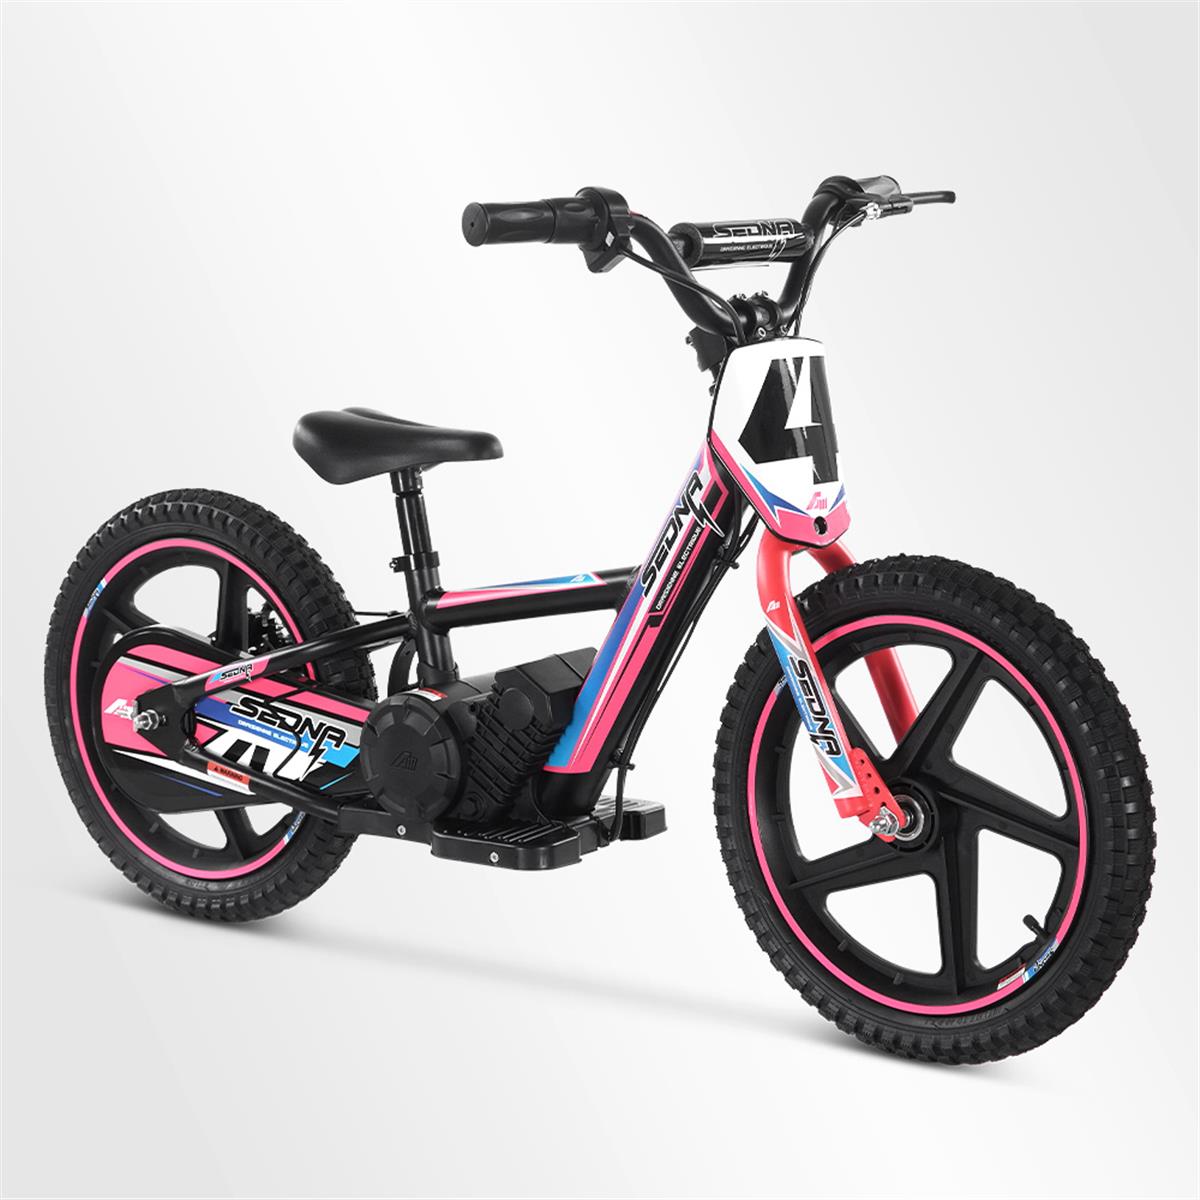 Draisienne électrique apollo sedna 16" 250w, Minimoto et Dirt Bike |  Smallmx - Dirt bike, Pit bike, Quads, Minimoto